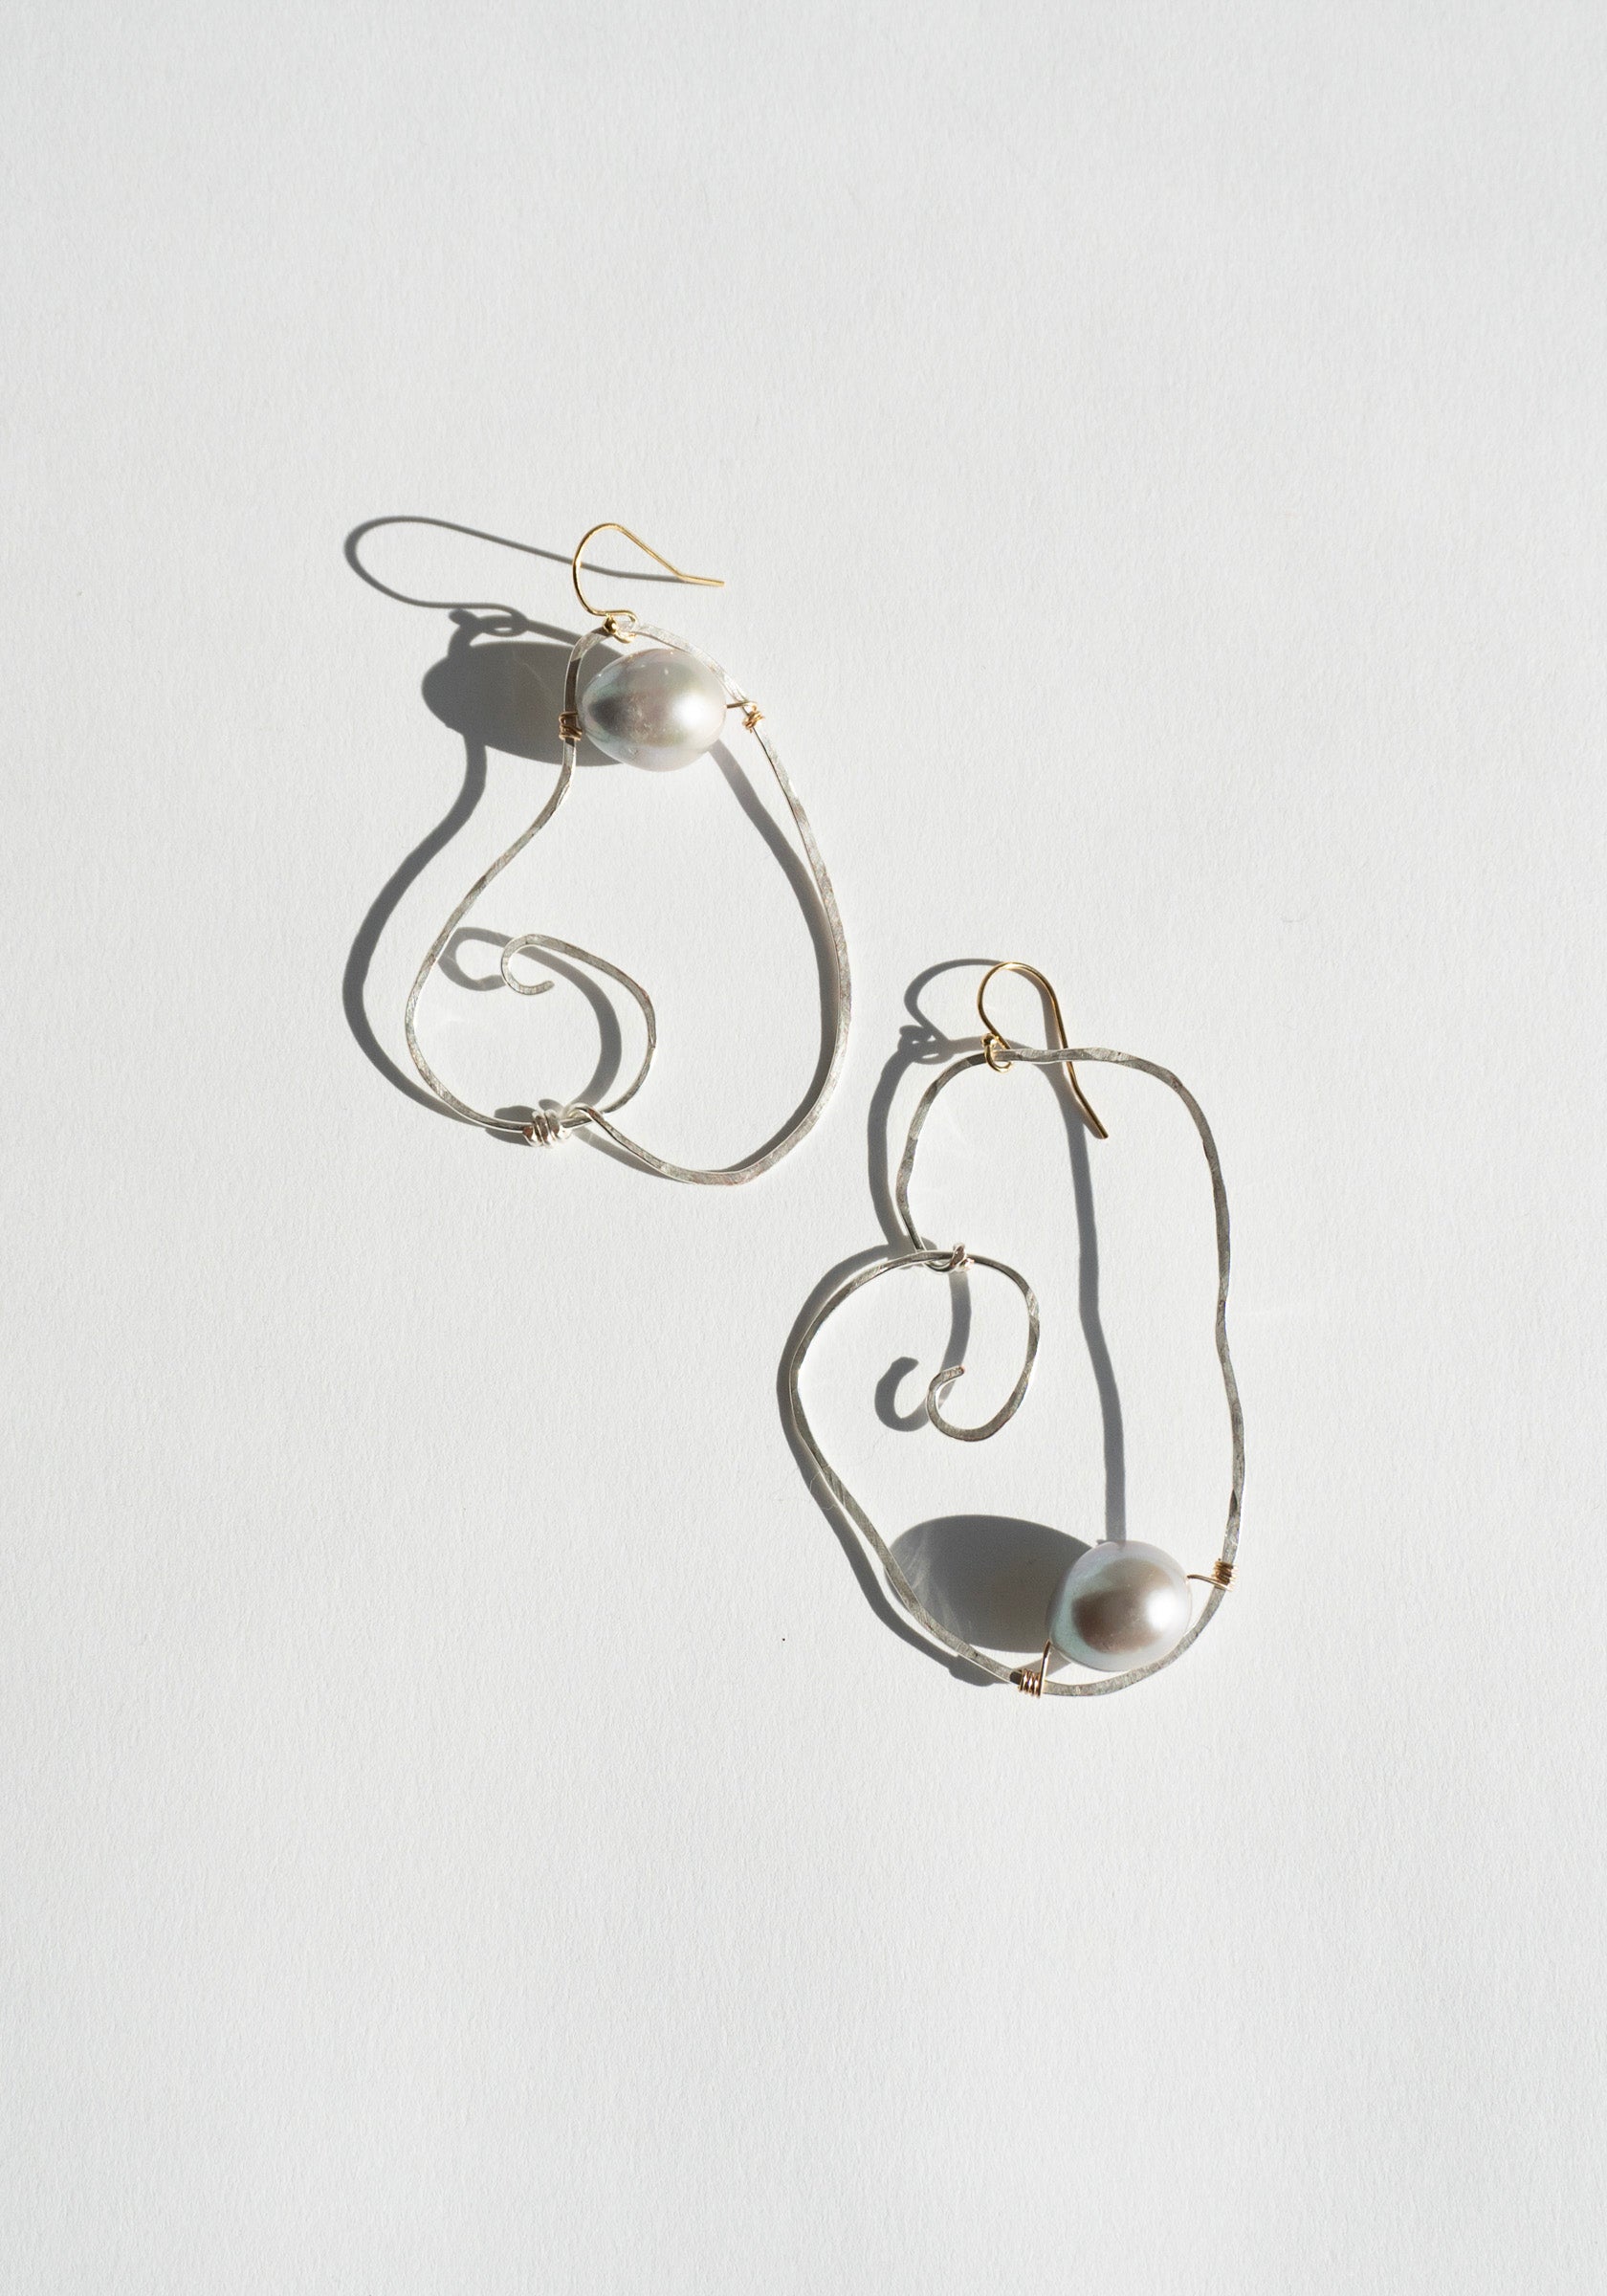 Isshi Gin Earrings in Silver